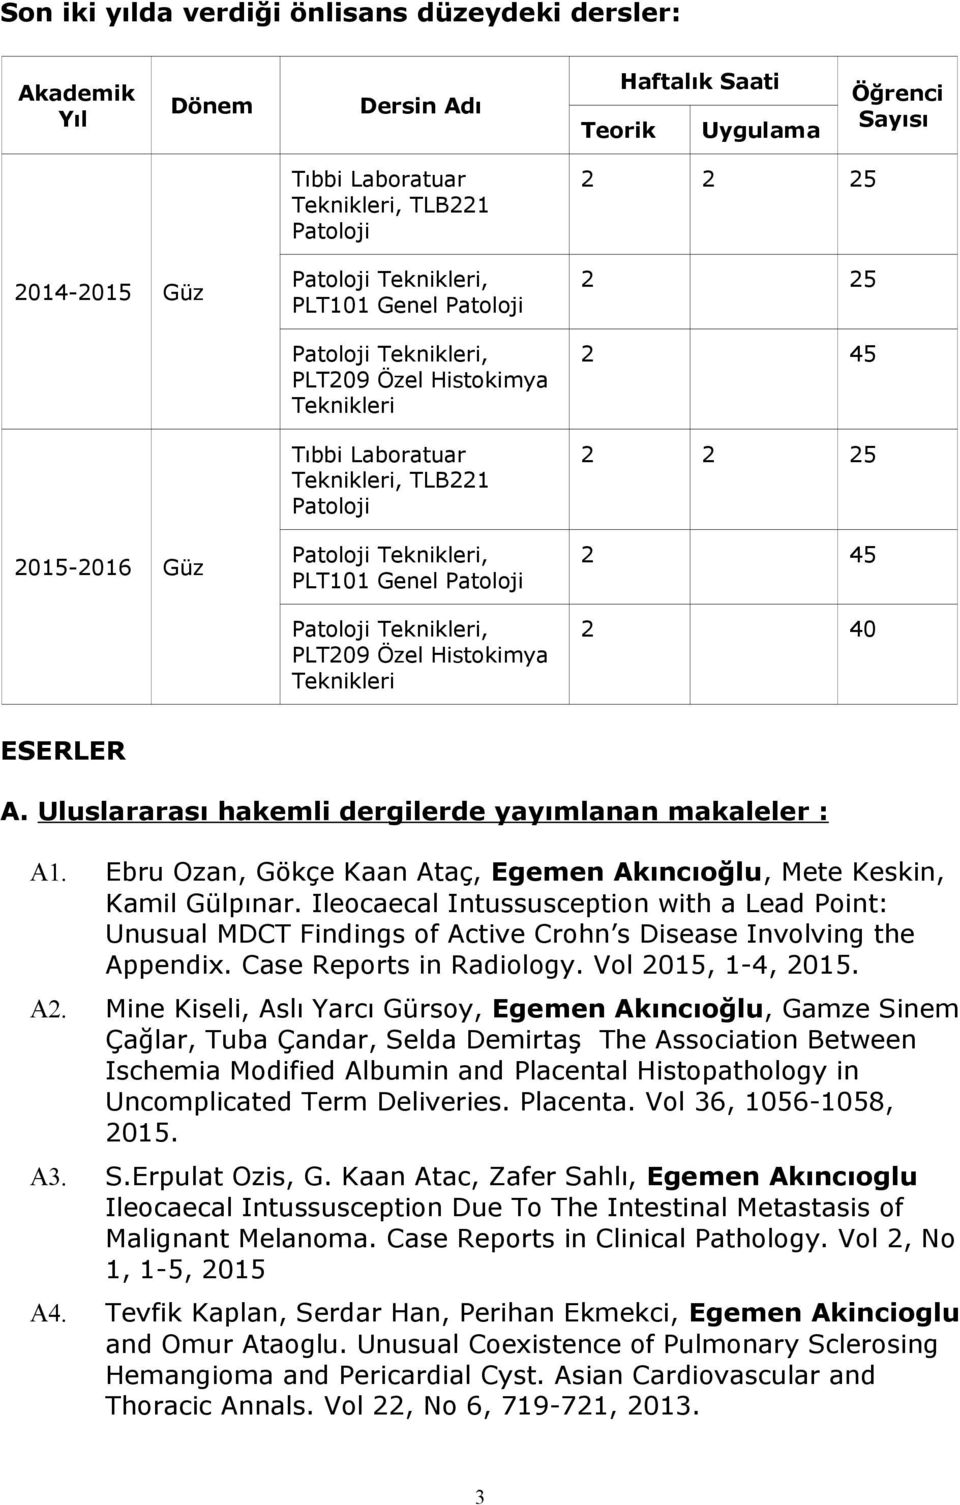 A. Uluslararası hakemli dergilerde yayımlanan makaleler : A1. Ebru Ozan, Gökçe Kaan Ataç, Egemen Akıncıoğlu, Mete Keskin, Kamil Gülpınar.